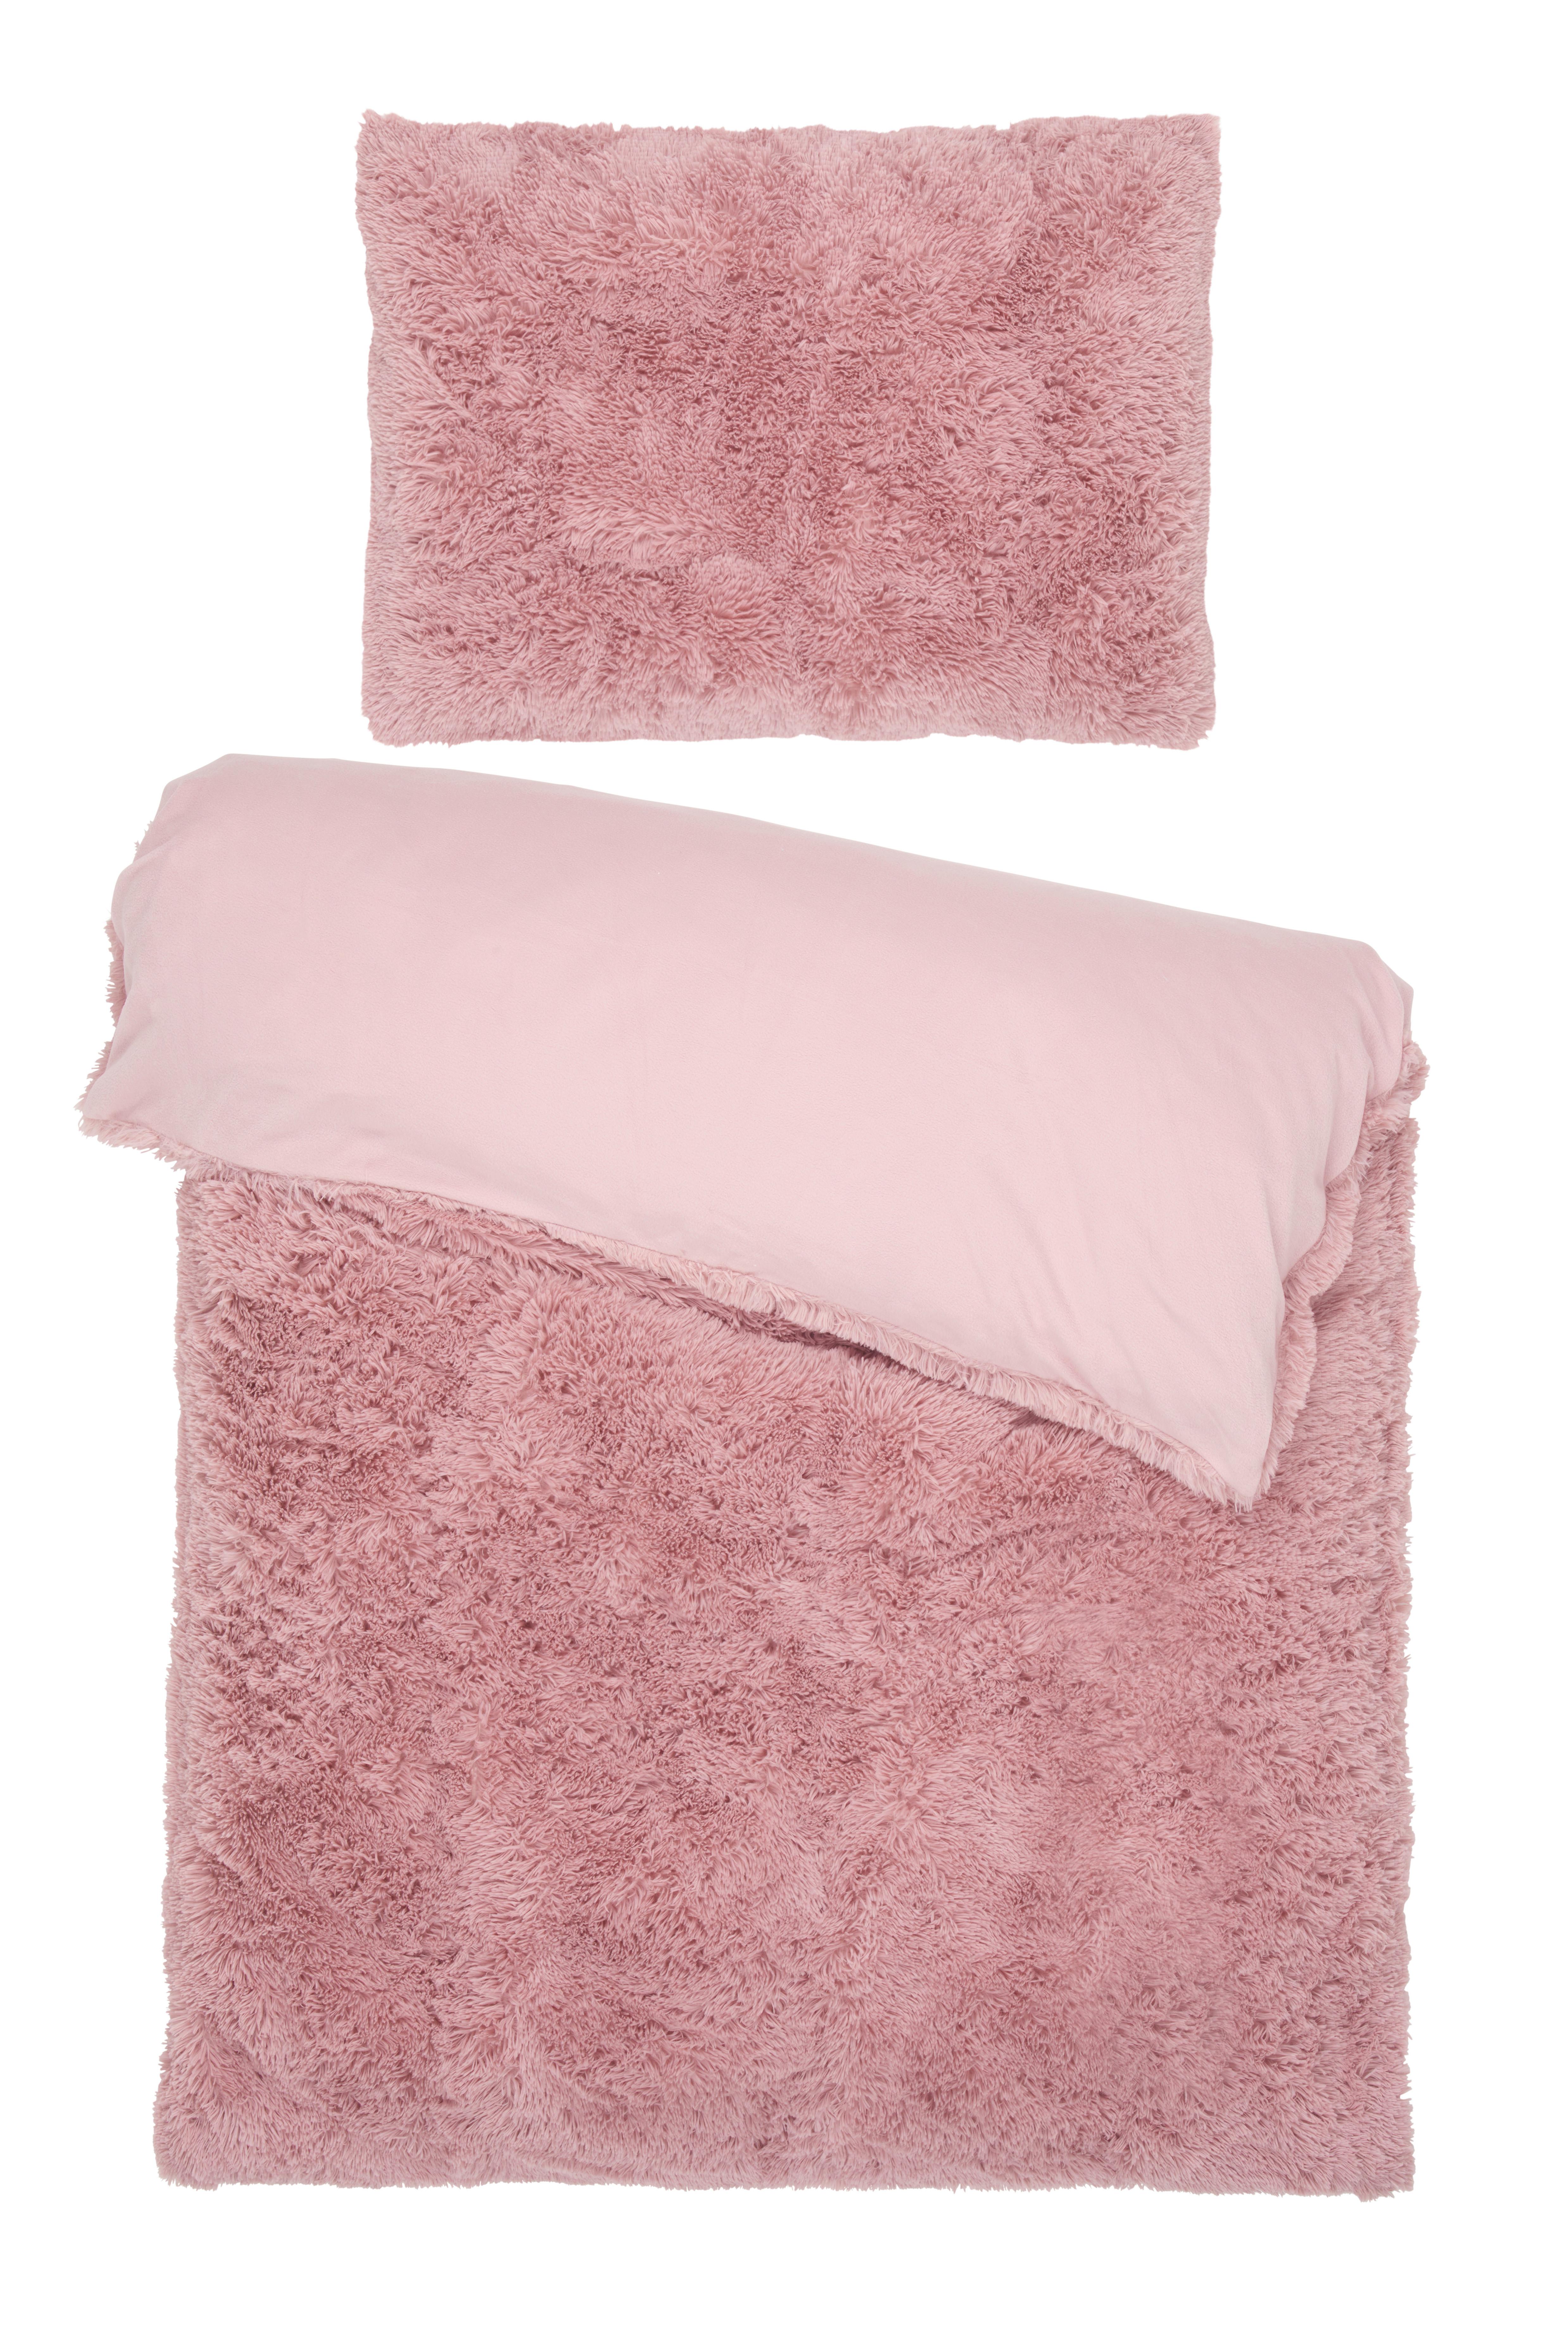 Povlečení Fluffy Wende, 70/90 140/200cm - růžová, textil (140/200cm) - Modern Living